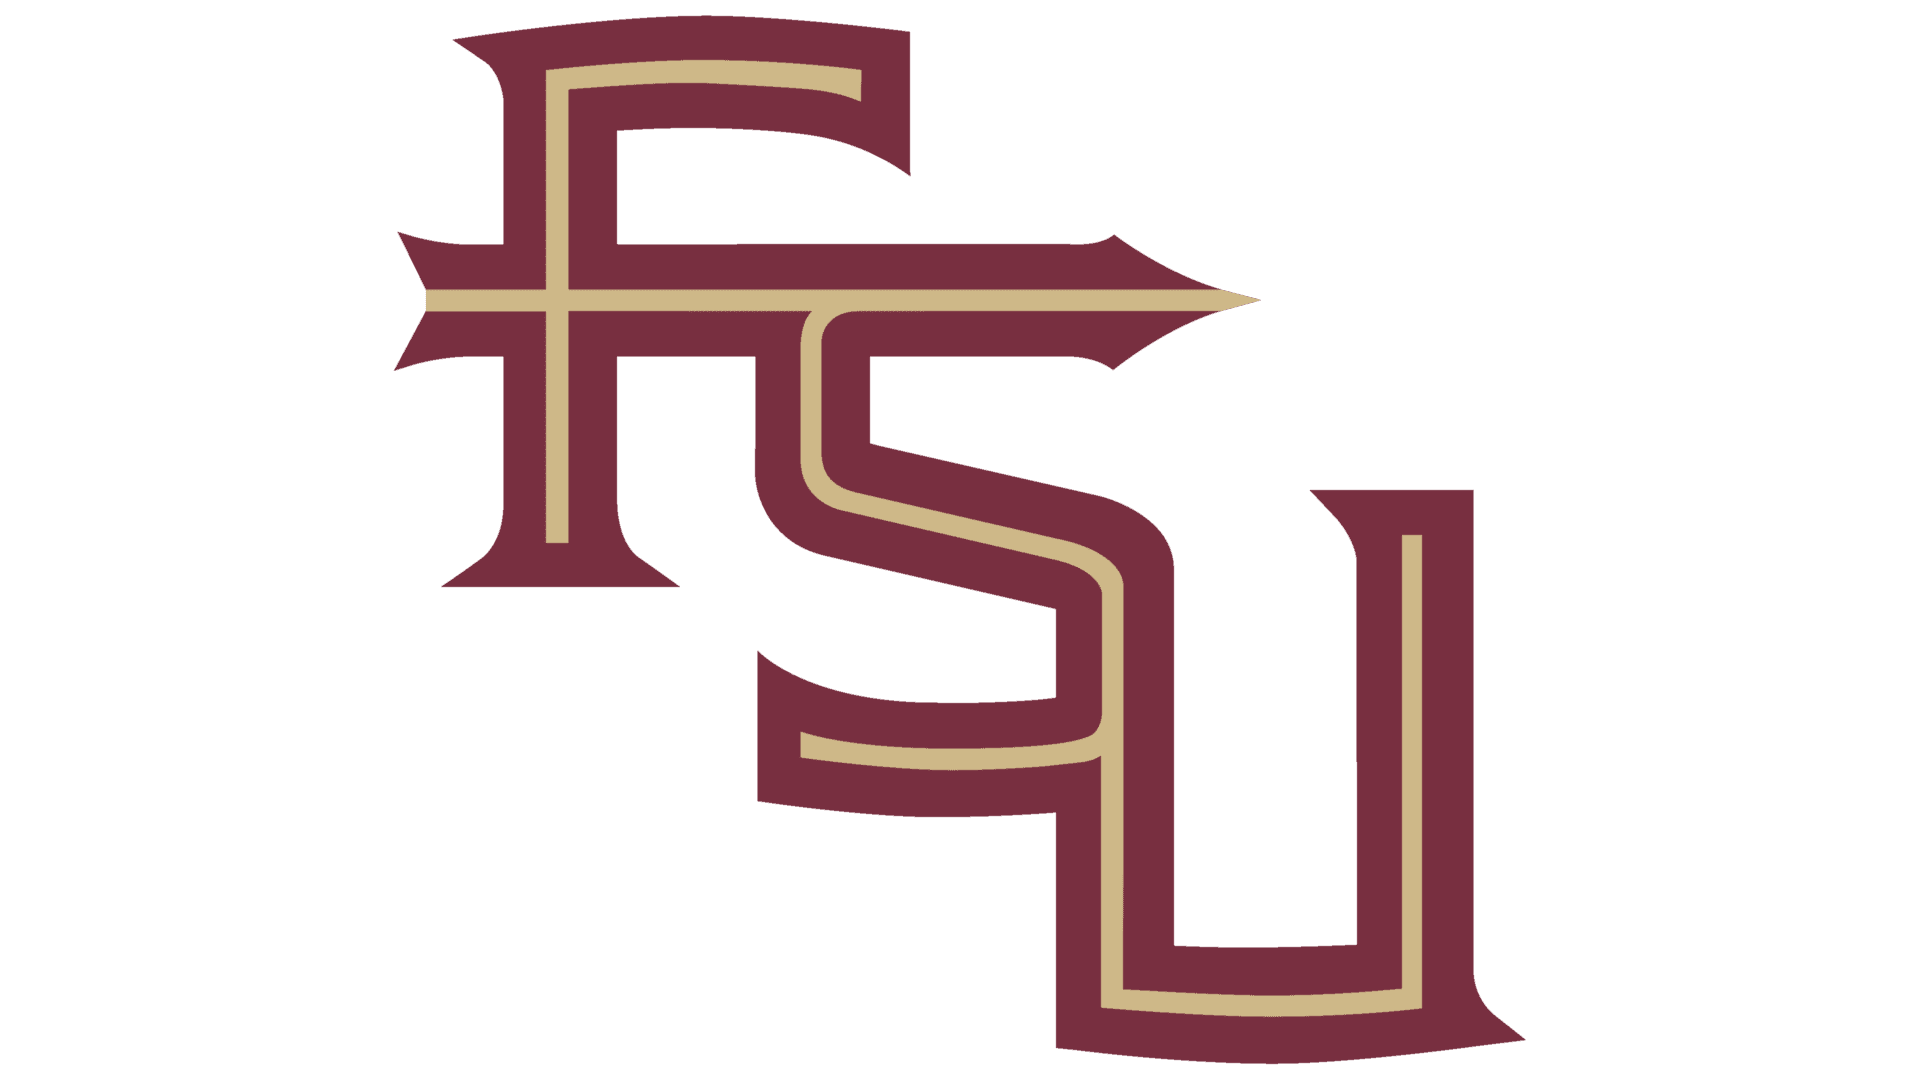 FSU_logo